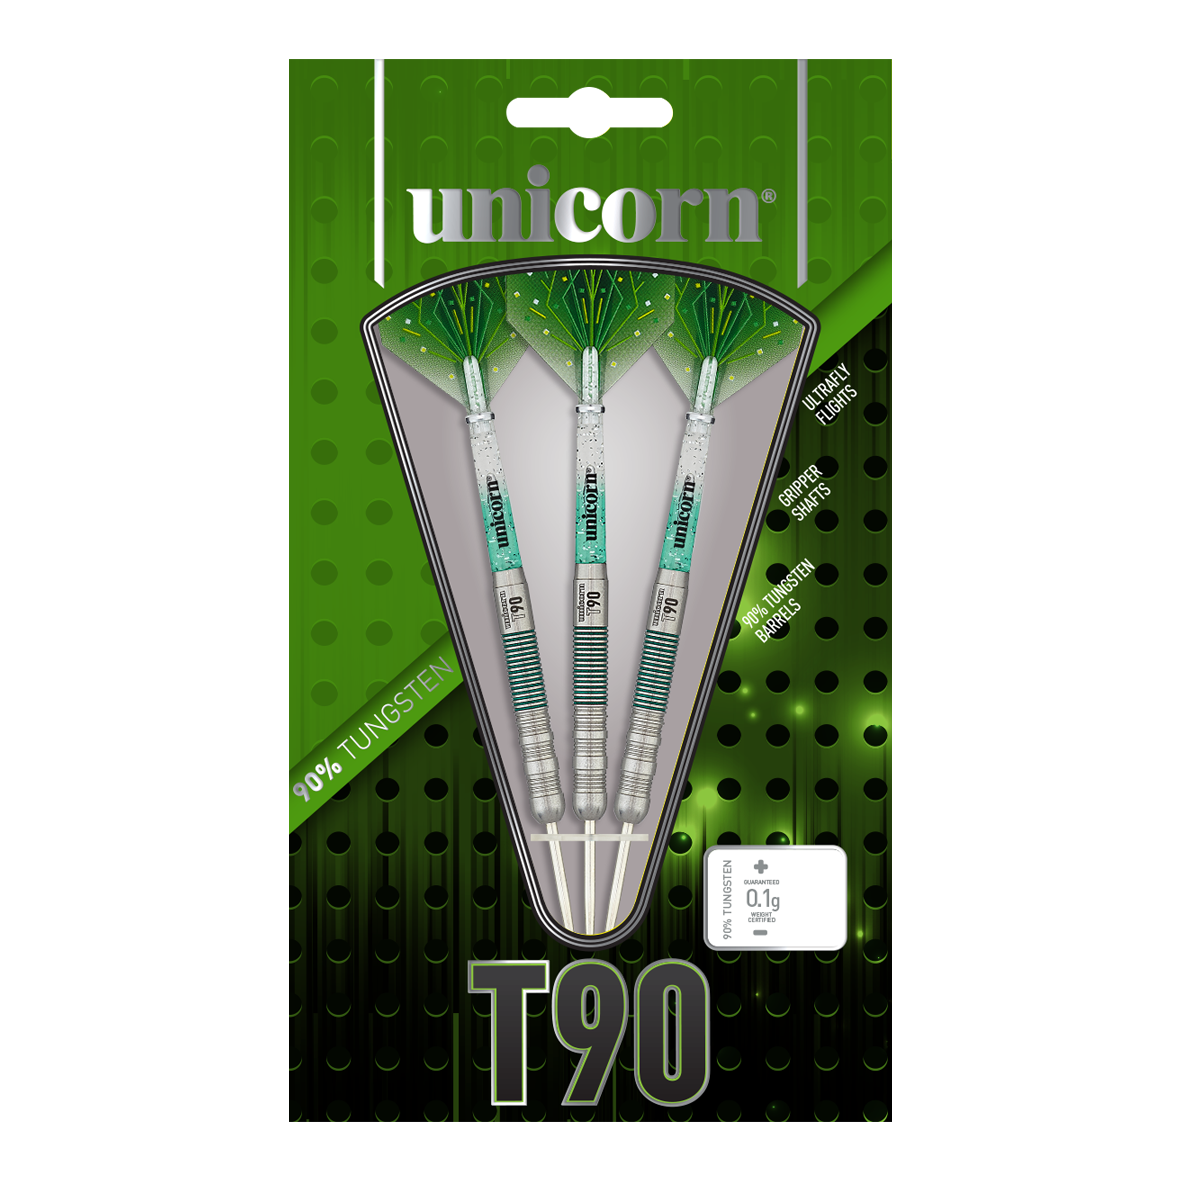 Unicorn T90 Core XL Groene stalen dartpijlen